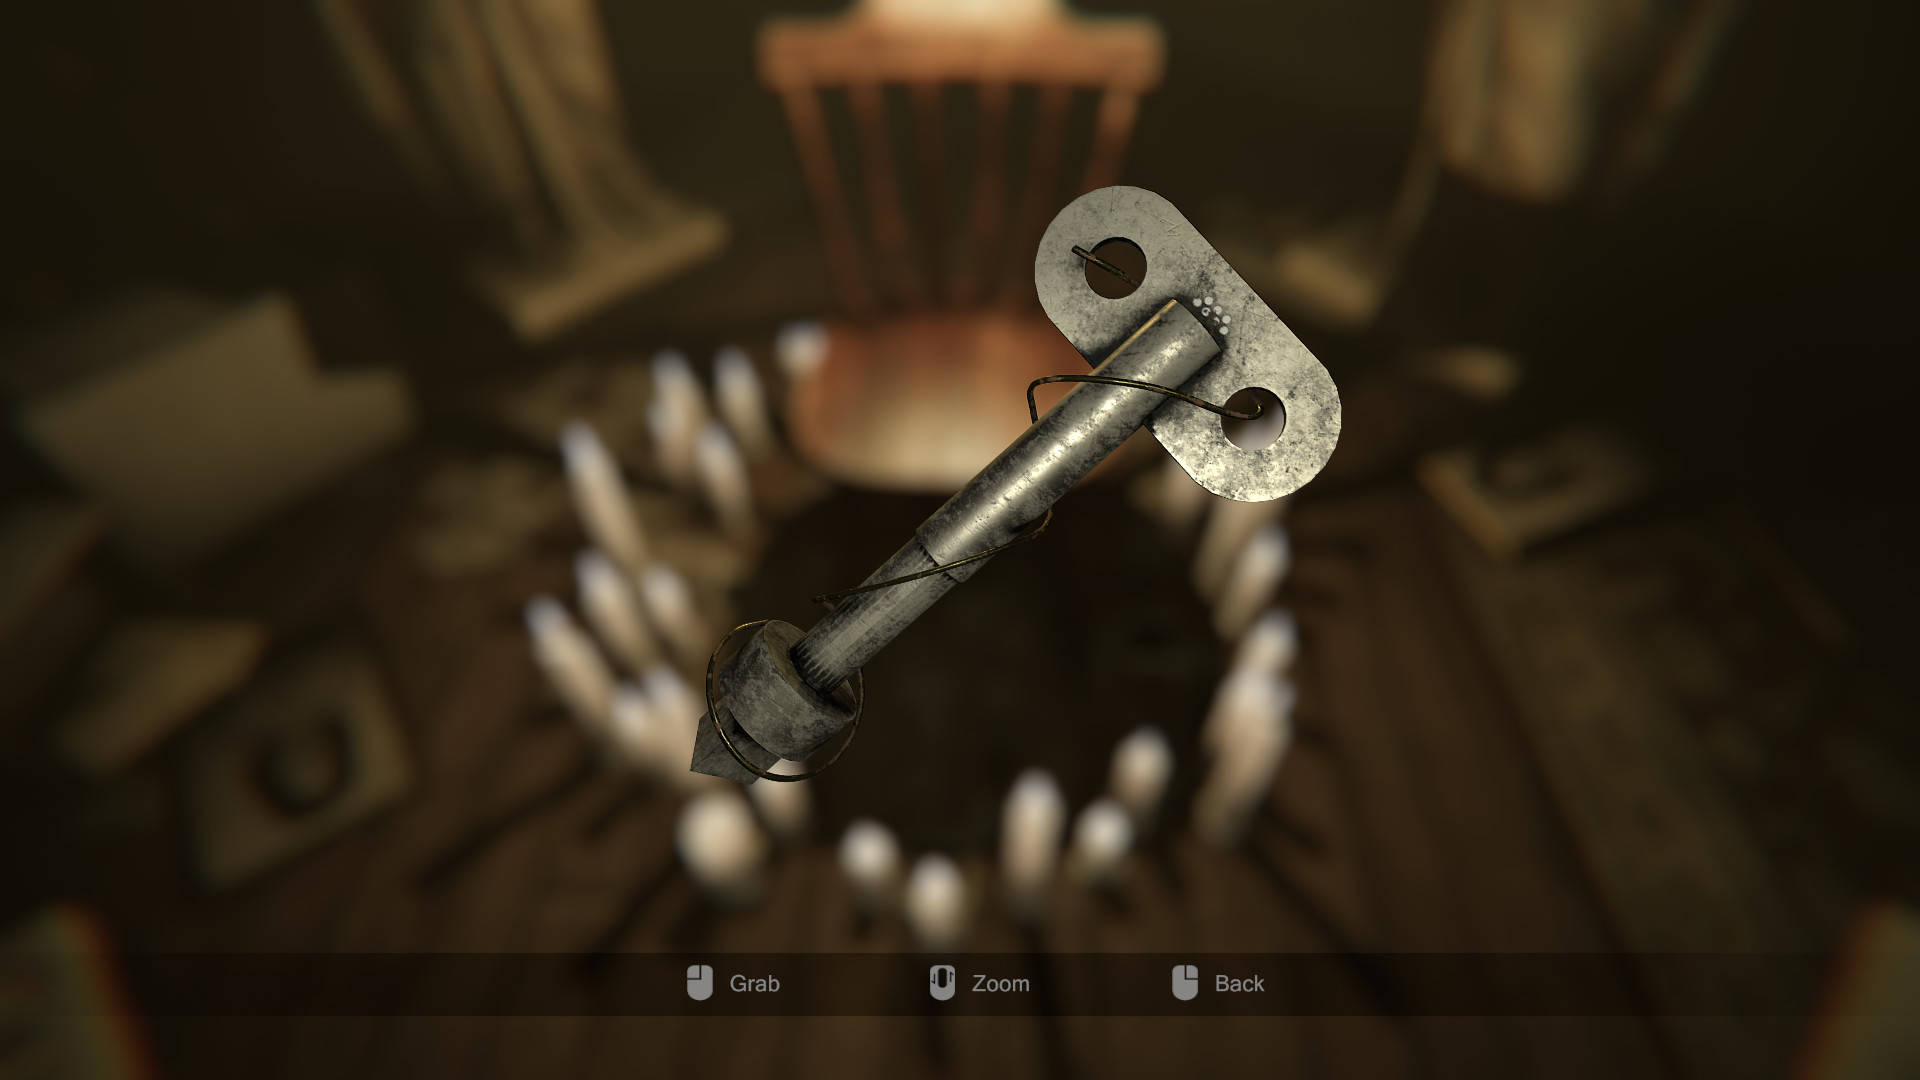  a key